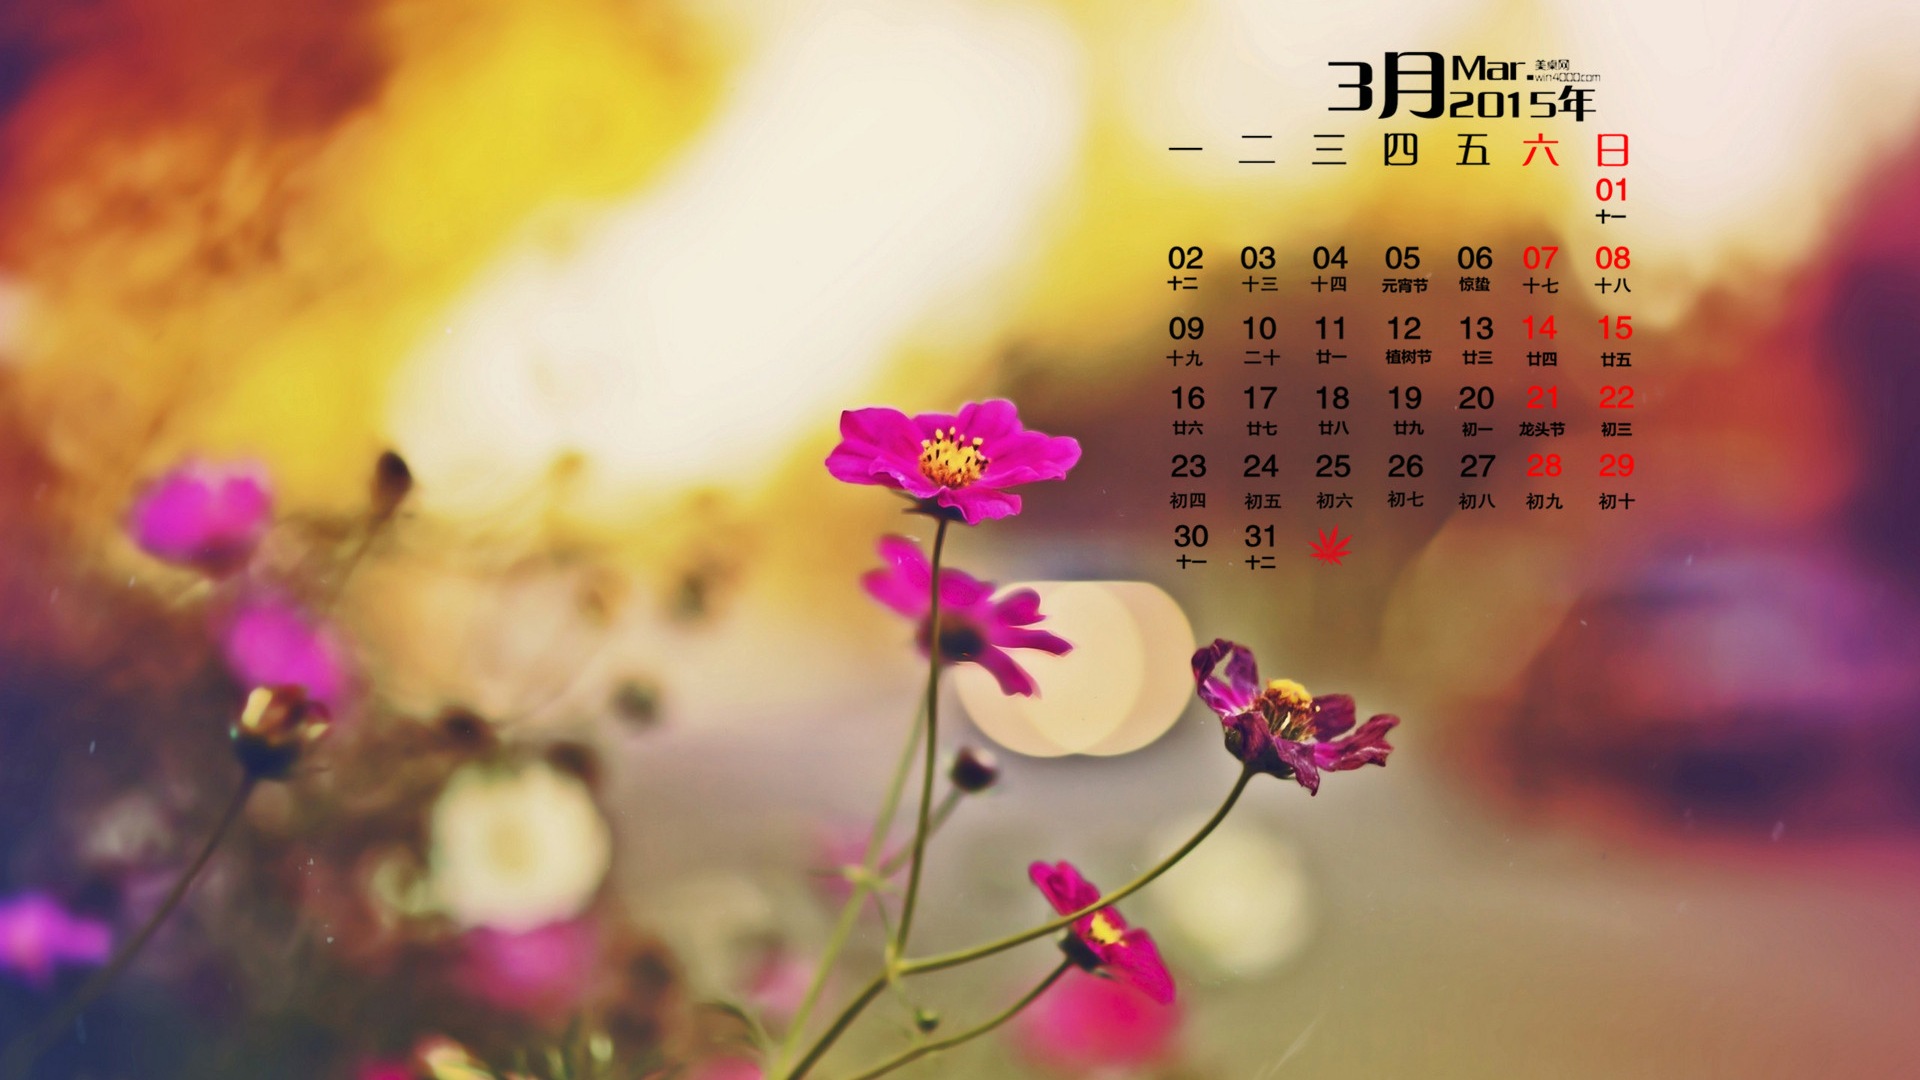 Март 2015 Календарь обои (1) #9 - 1920x1080